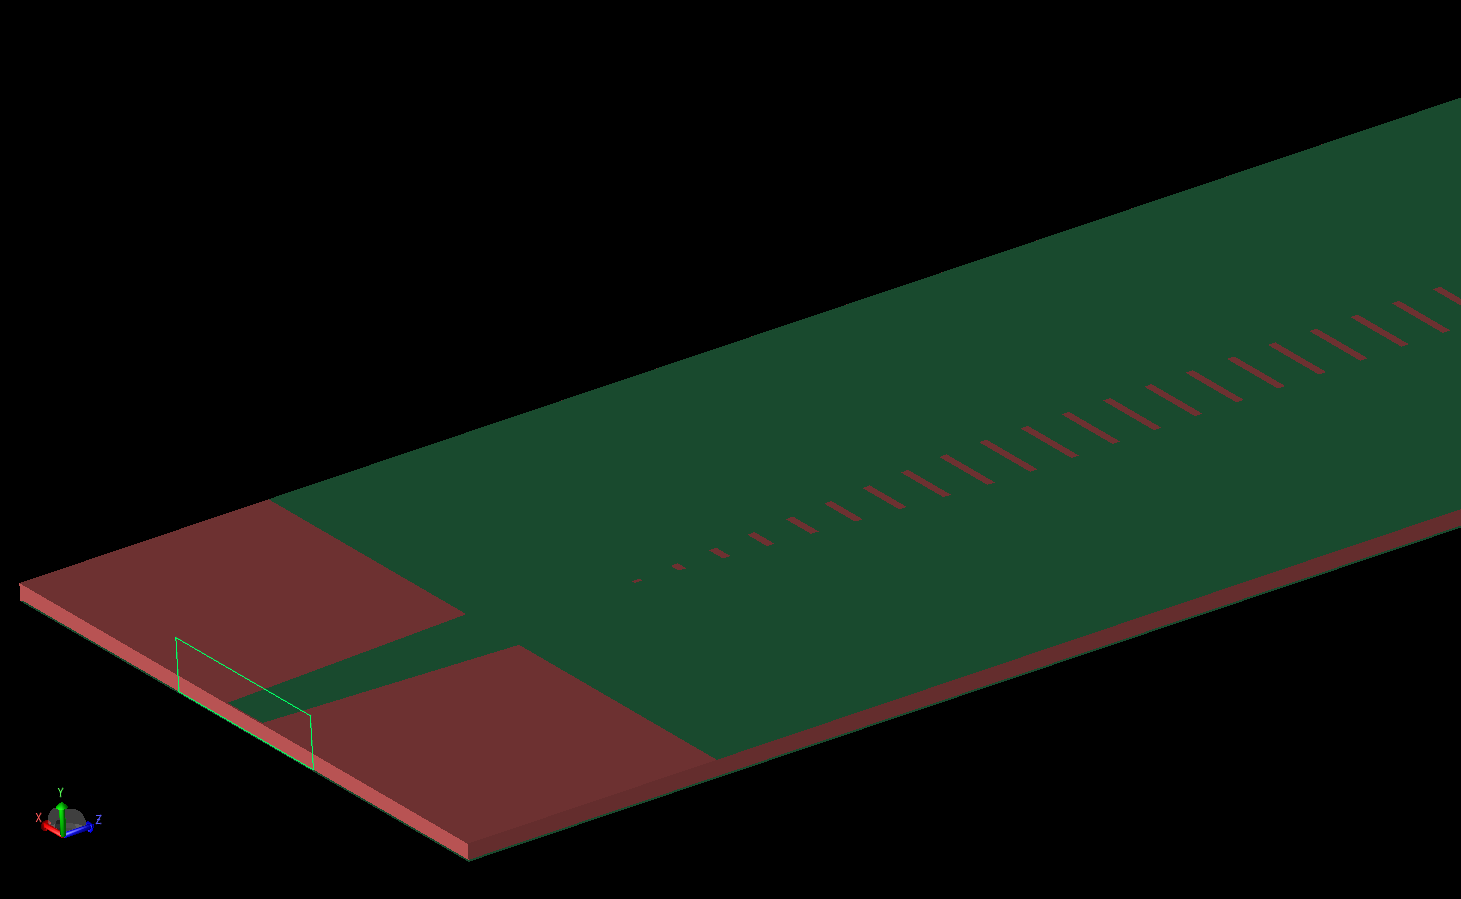 Figura 3: Una vista en ángulo de la antena desde un puerto muestra el puerto de guía de ondas nodal unido a la línea cónica, el grosor de la capa de sustrato y una porción de la capa superior ranurada.